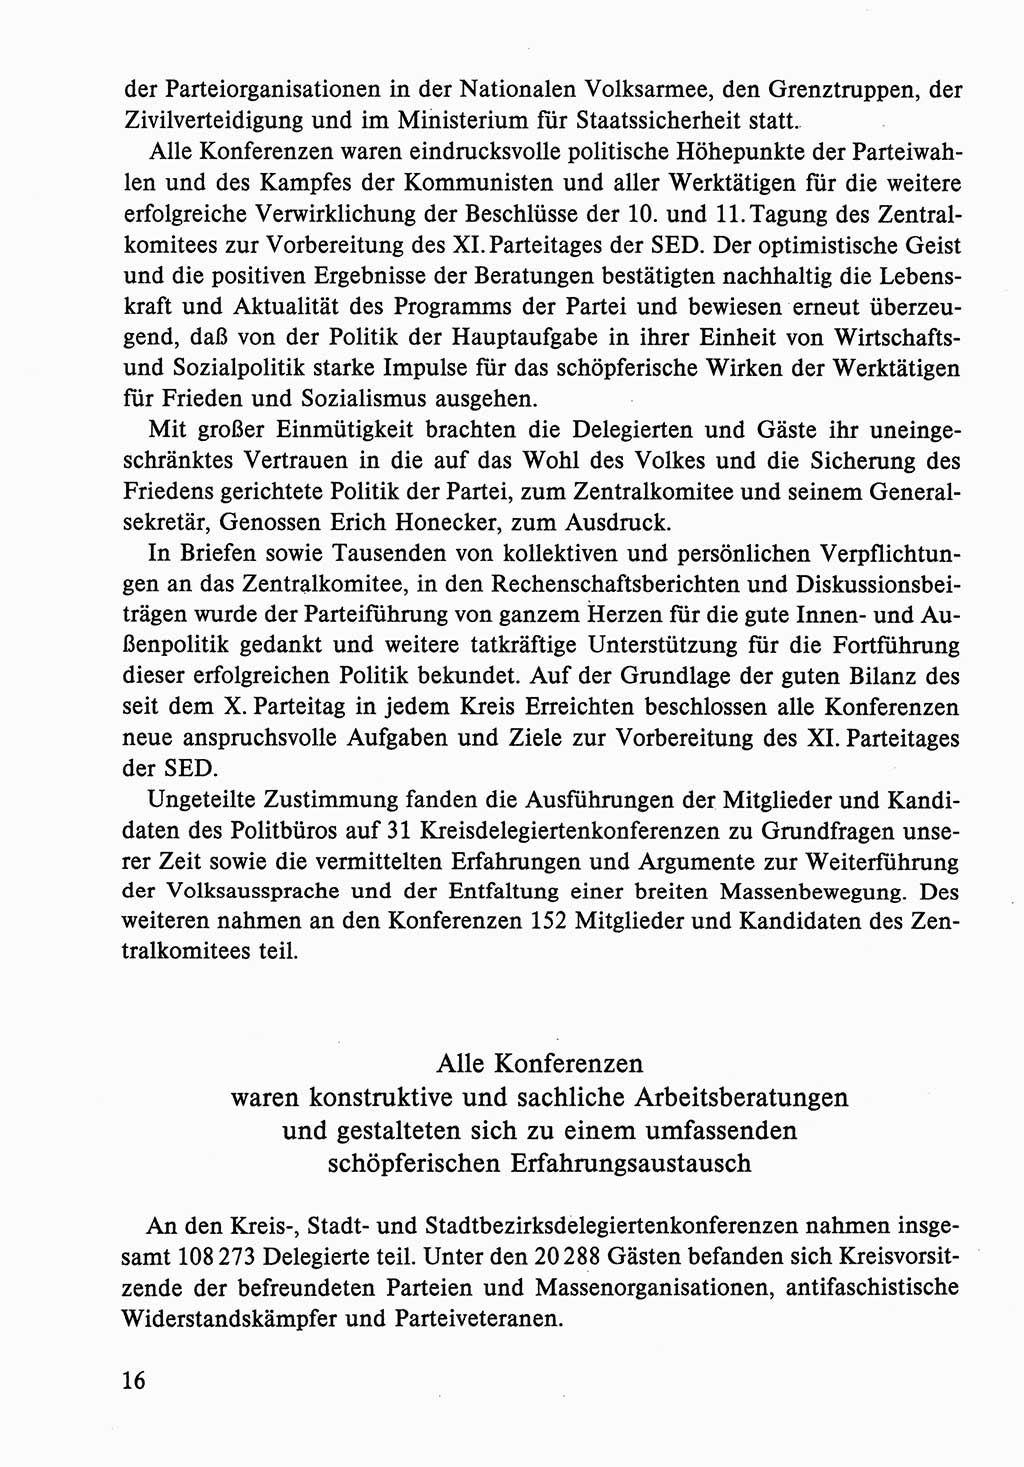 Dokumente der Sozialistischen Einheitspartei Deutschlands (SED) [Deutsche Demokratische Republik (DDR)] 1986-1987, Seite 16 (Dok. SED DDR 1986-1987, S. 16)